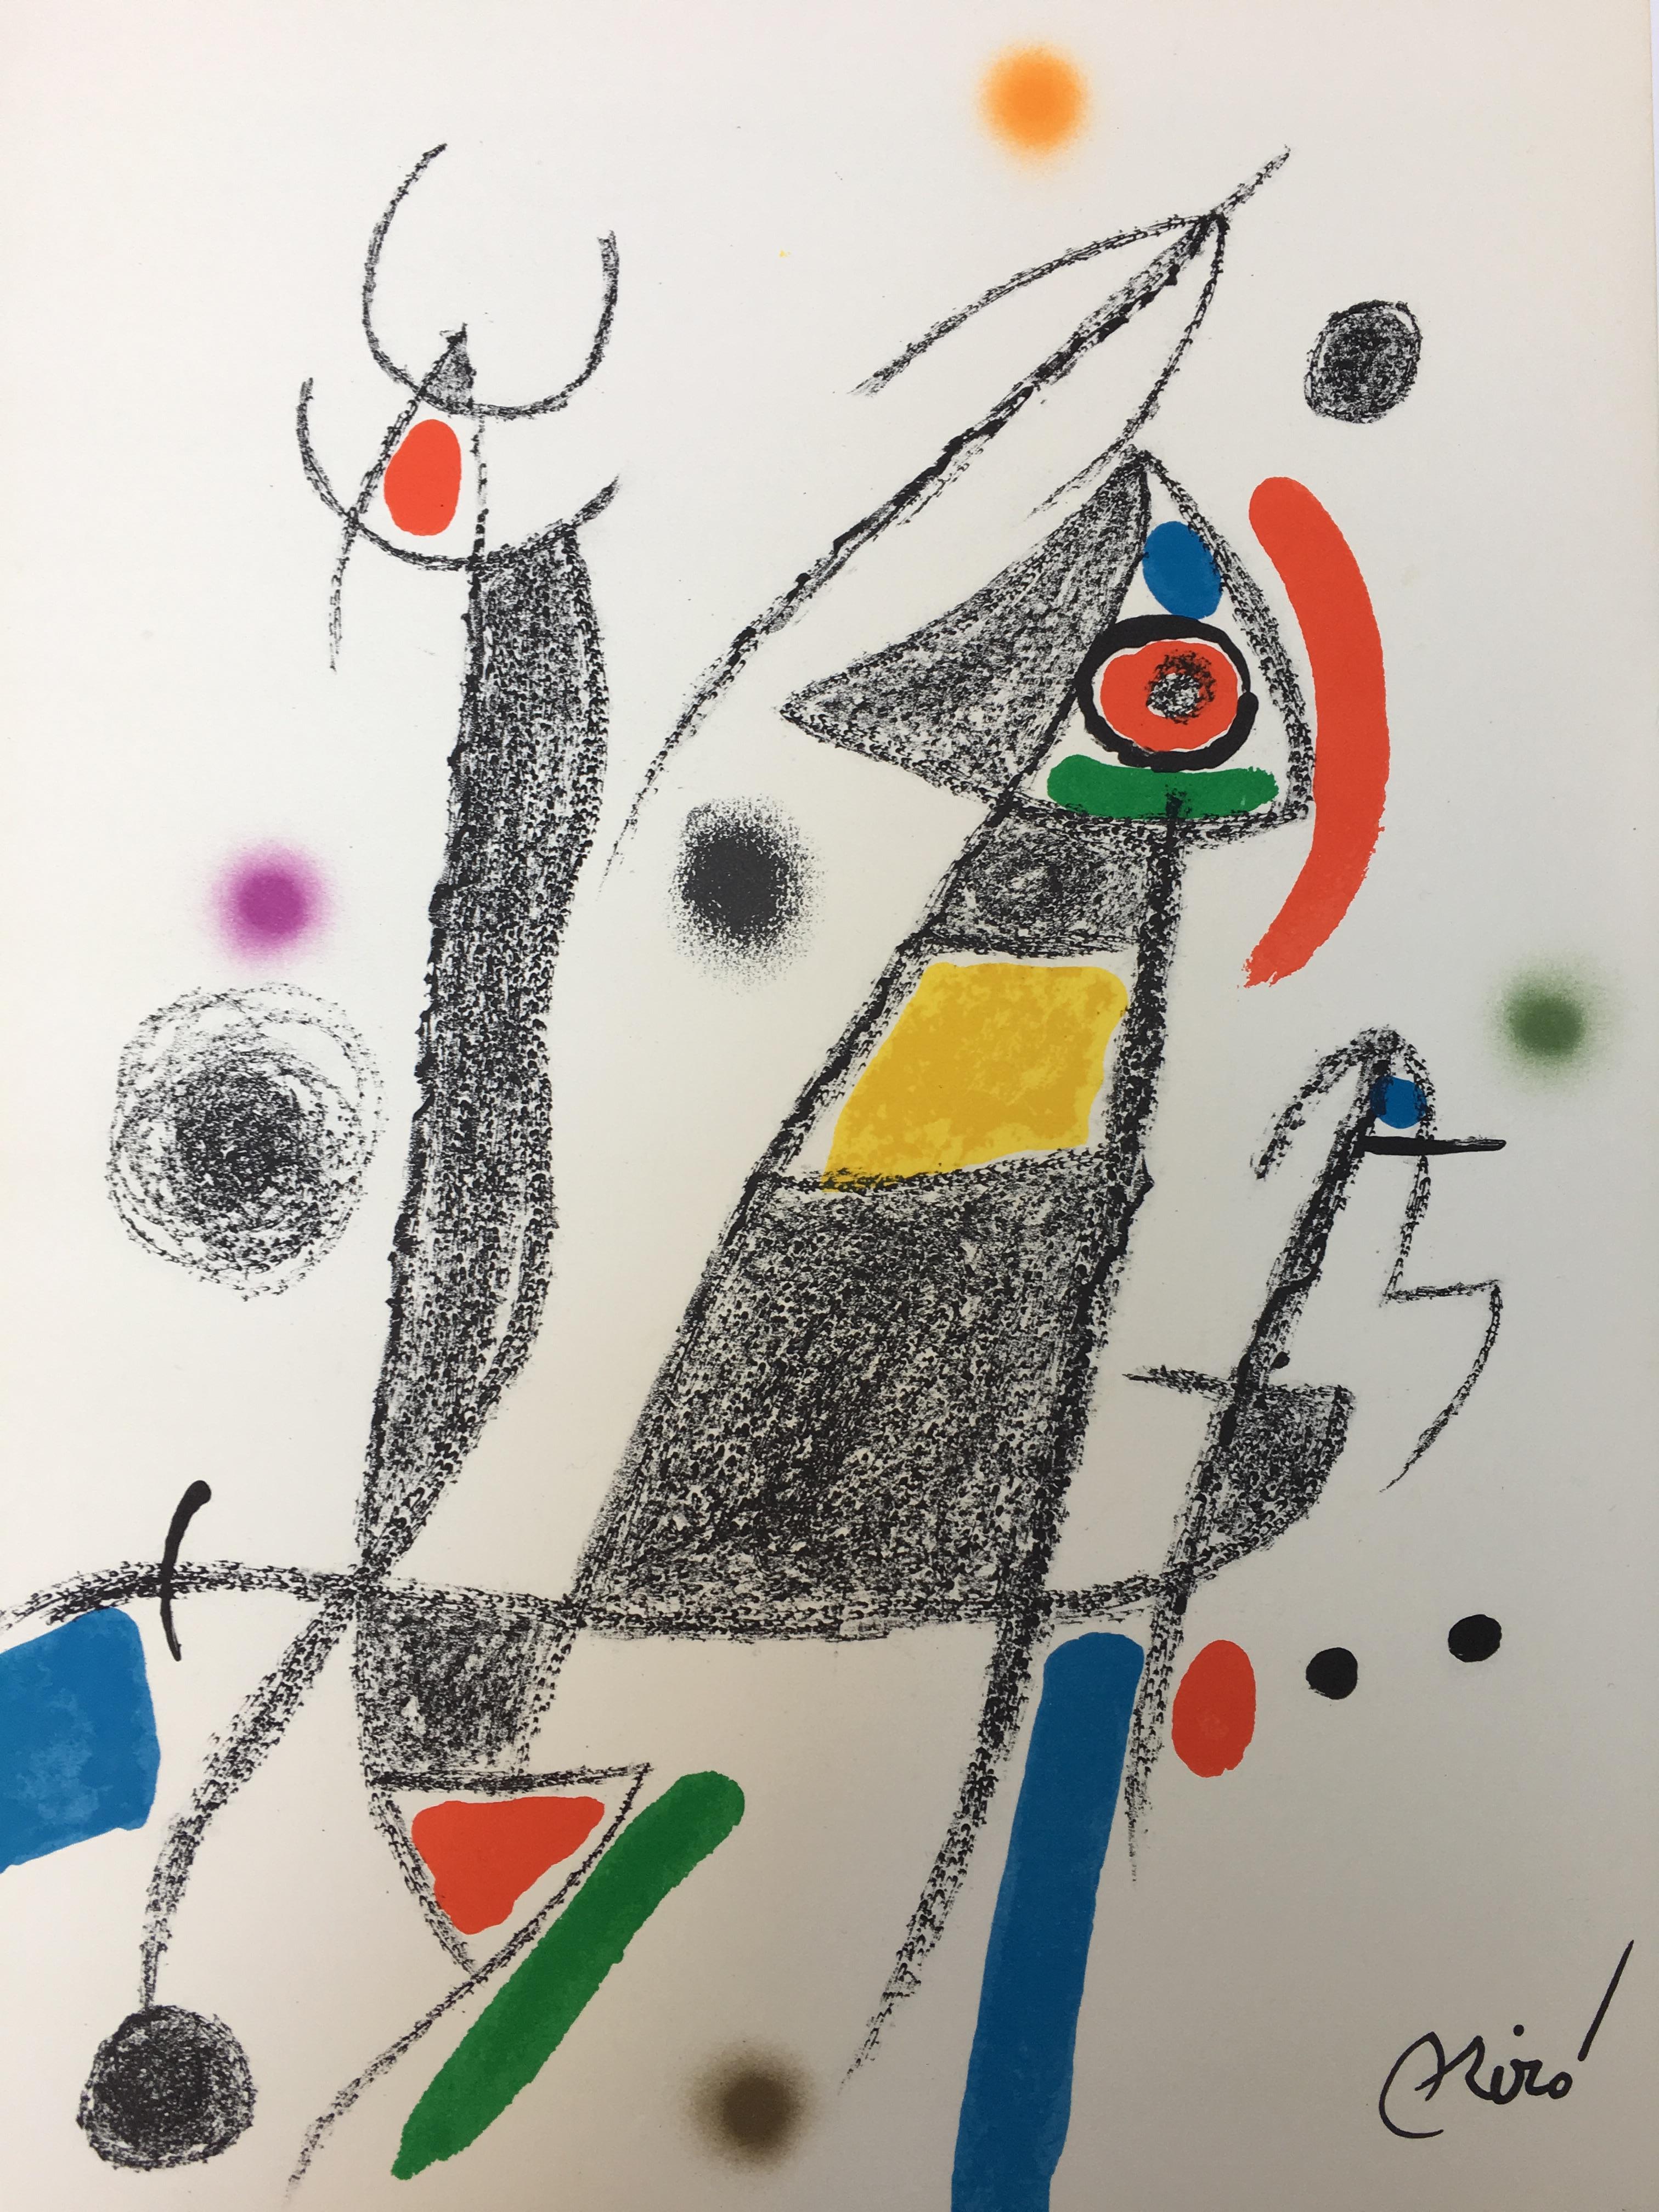 Joan Miró Abstract Print - Maravillas con Variaciones Acrosticas 1